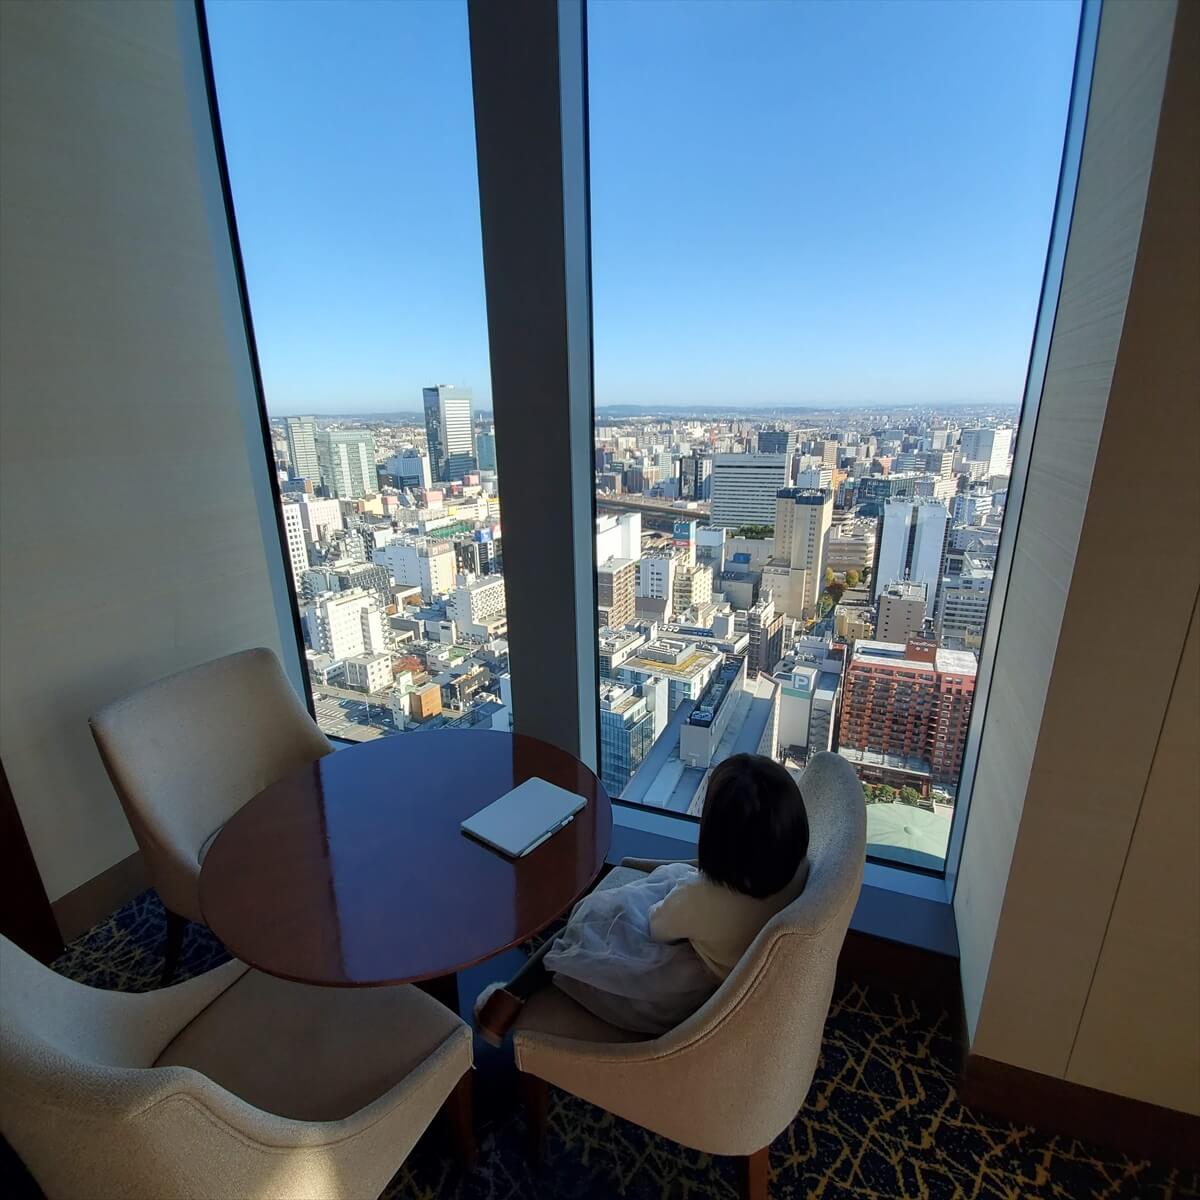 ウェスティンホテル仙台のロビーラウンジ「ホライゾン」の景色の良い窓際の席